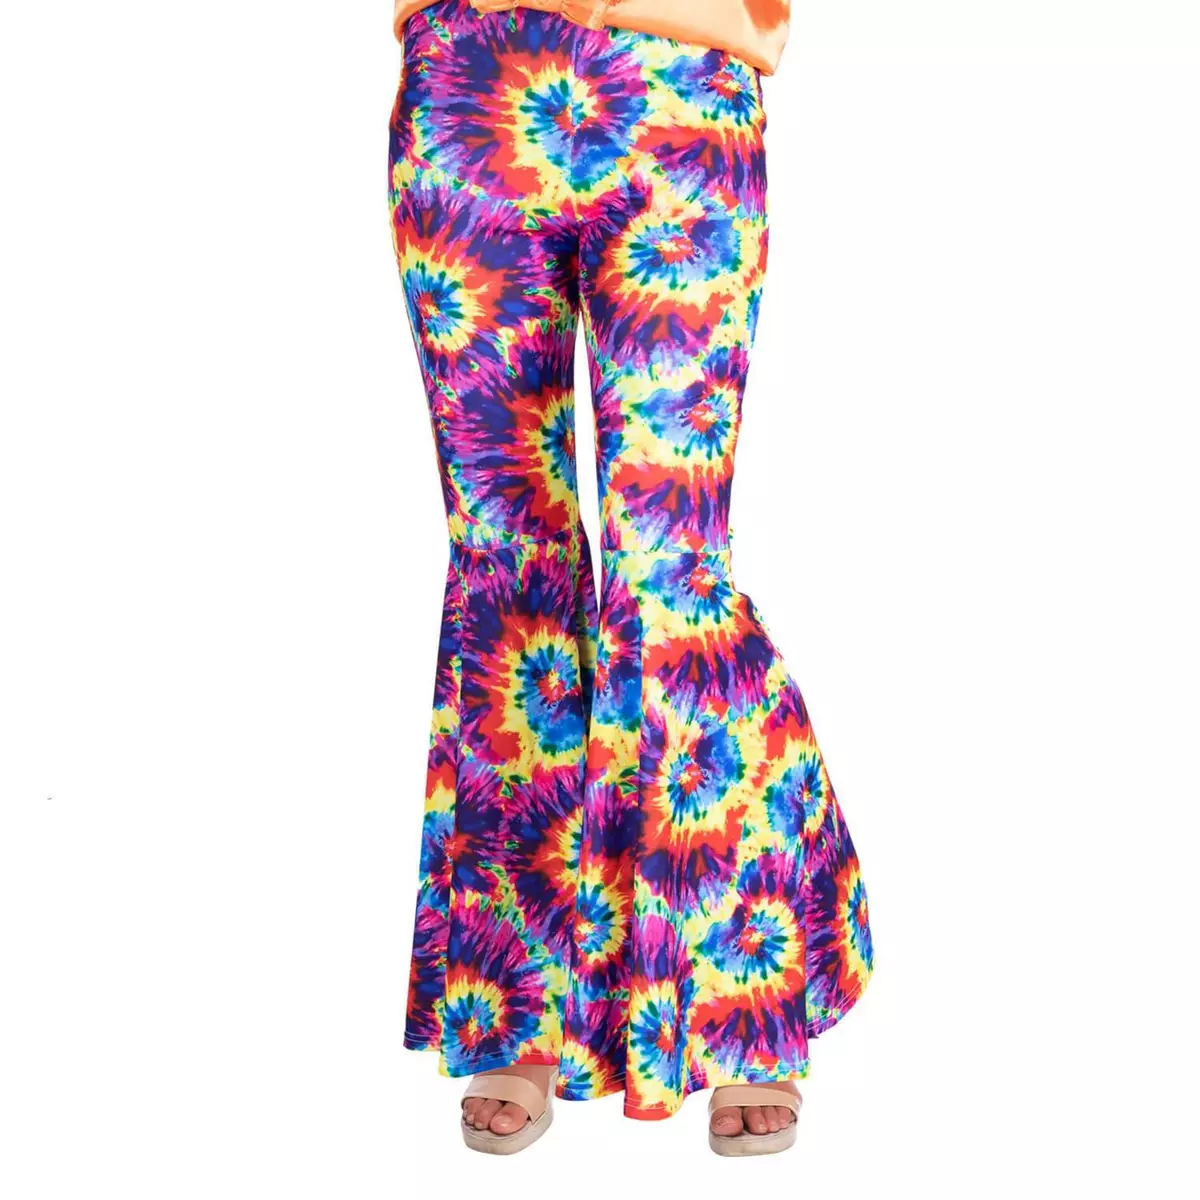  Pantalon Rainbow Tie Dye Flares - Femme - L - 40/42